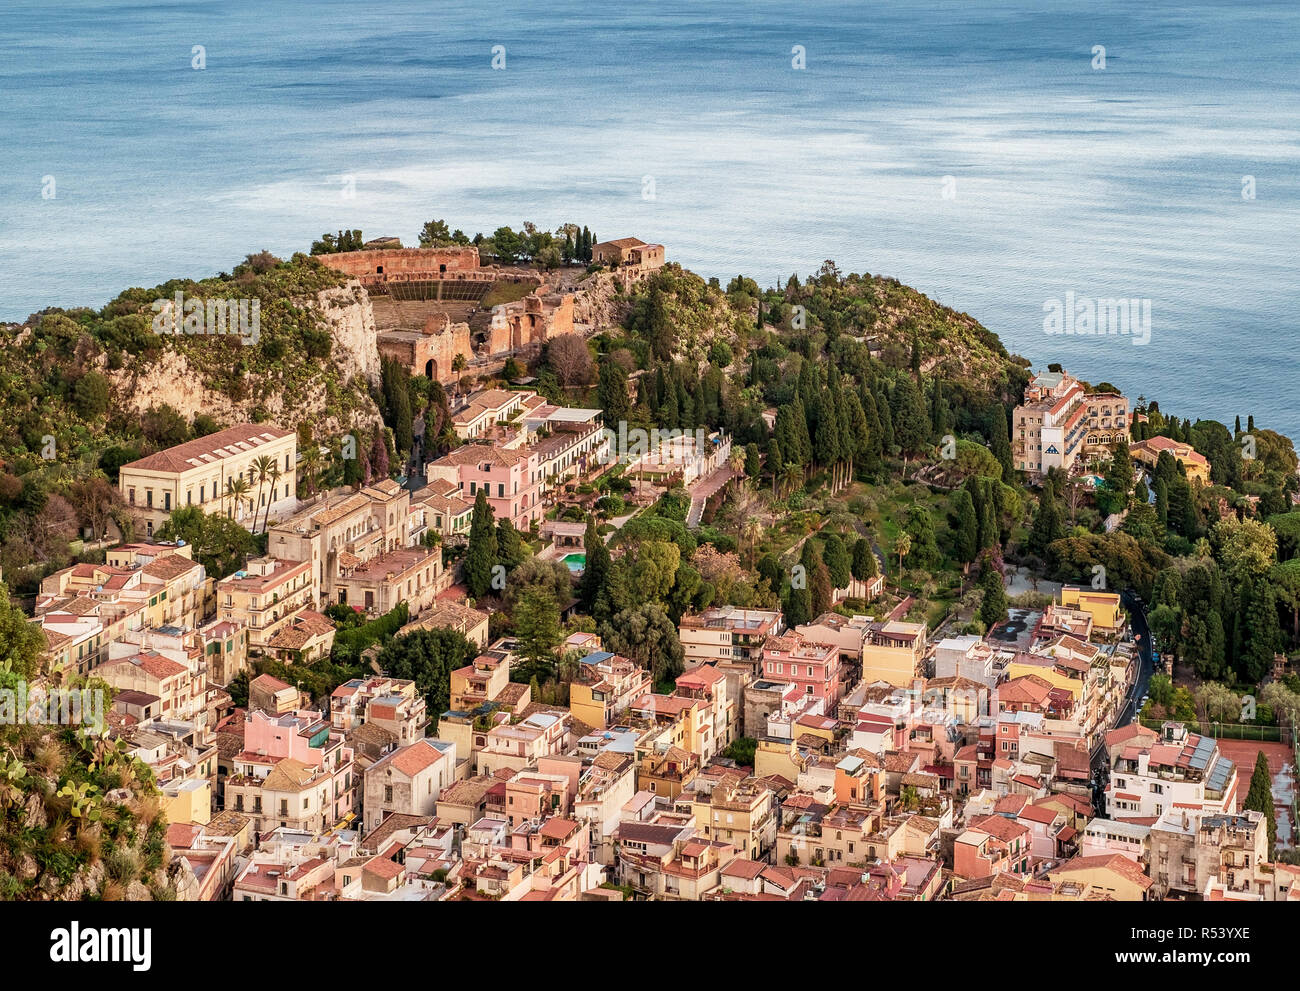 L'antico teatro greco al di sopra del villaggio di Taormina, provincia di Messina, Sicilia, Italia. Mare Mediterraneo sullo sfondo. Foto Stock